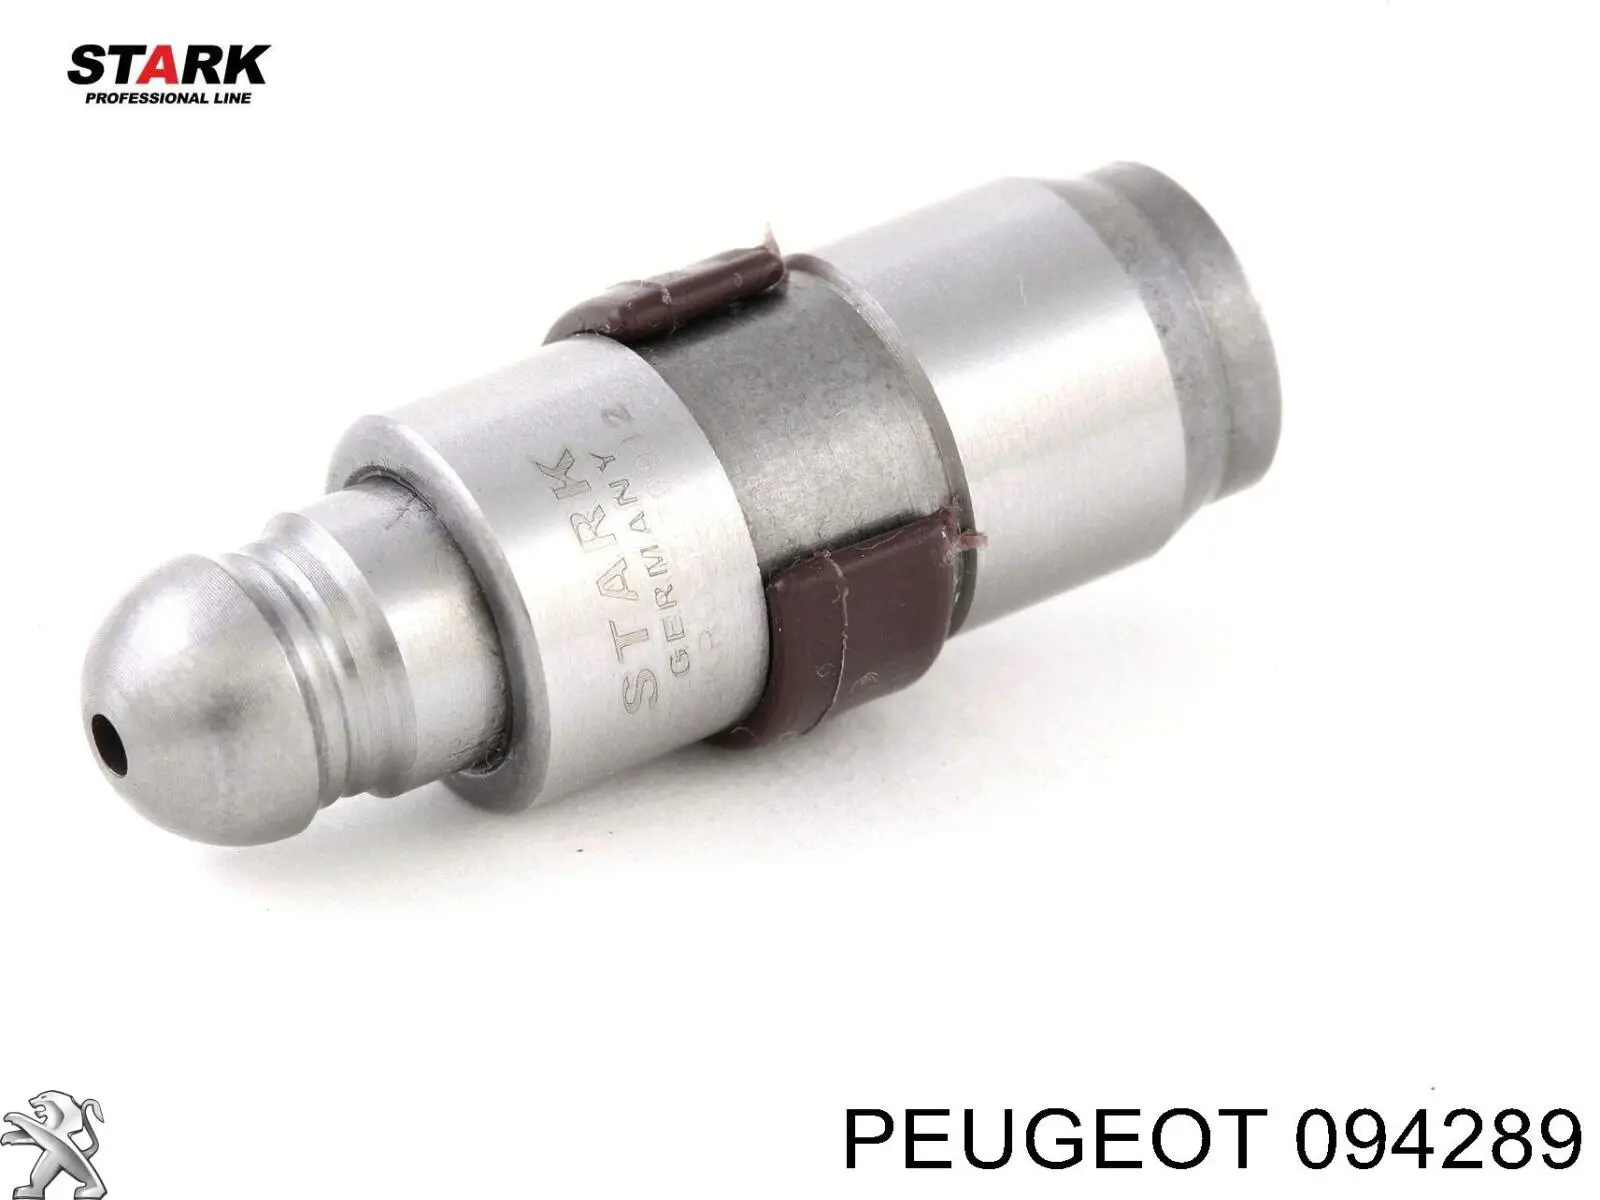 0942 89 Peugeot/Citroen empujador de válvula